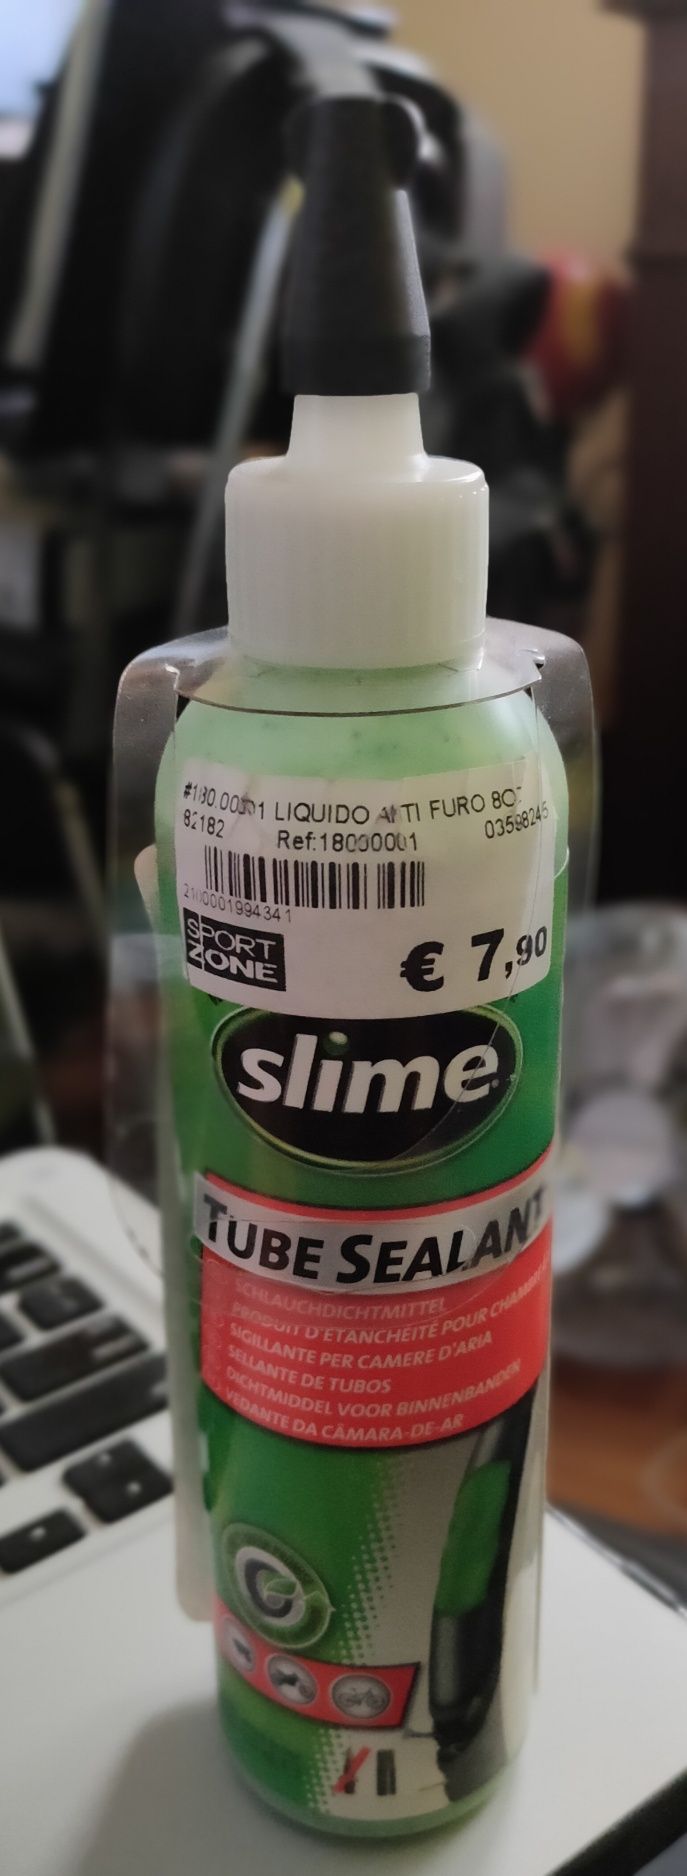 Liquido anti-furo Tube Sealant